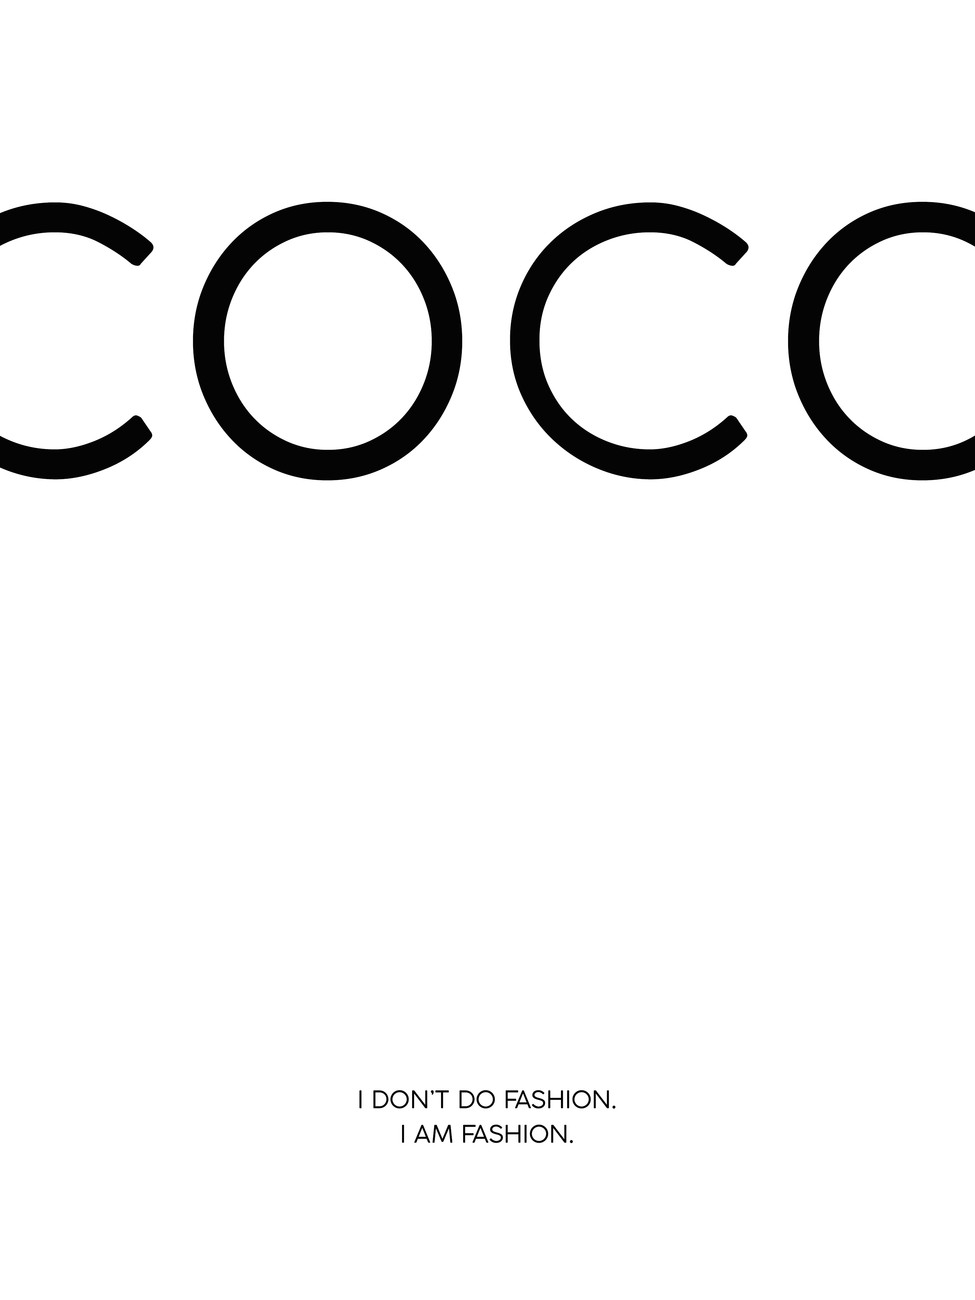 Sticker coco1